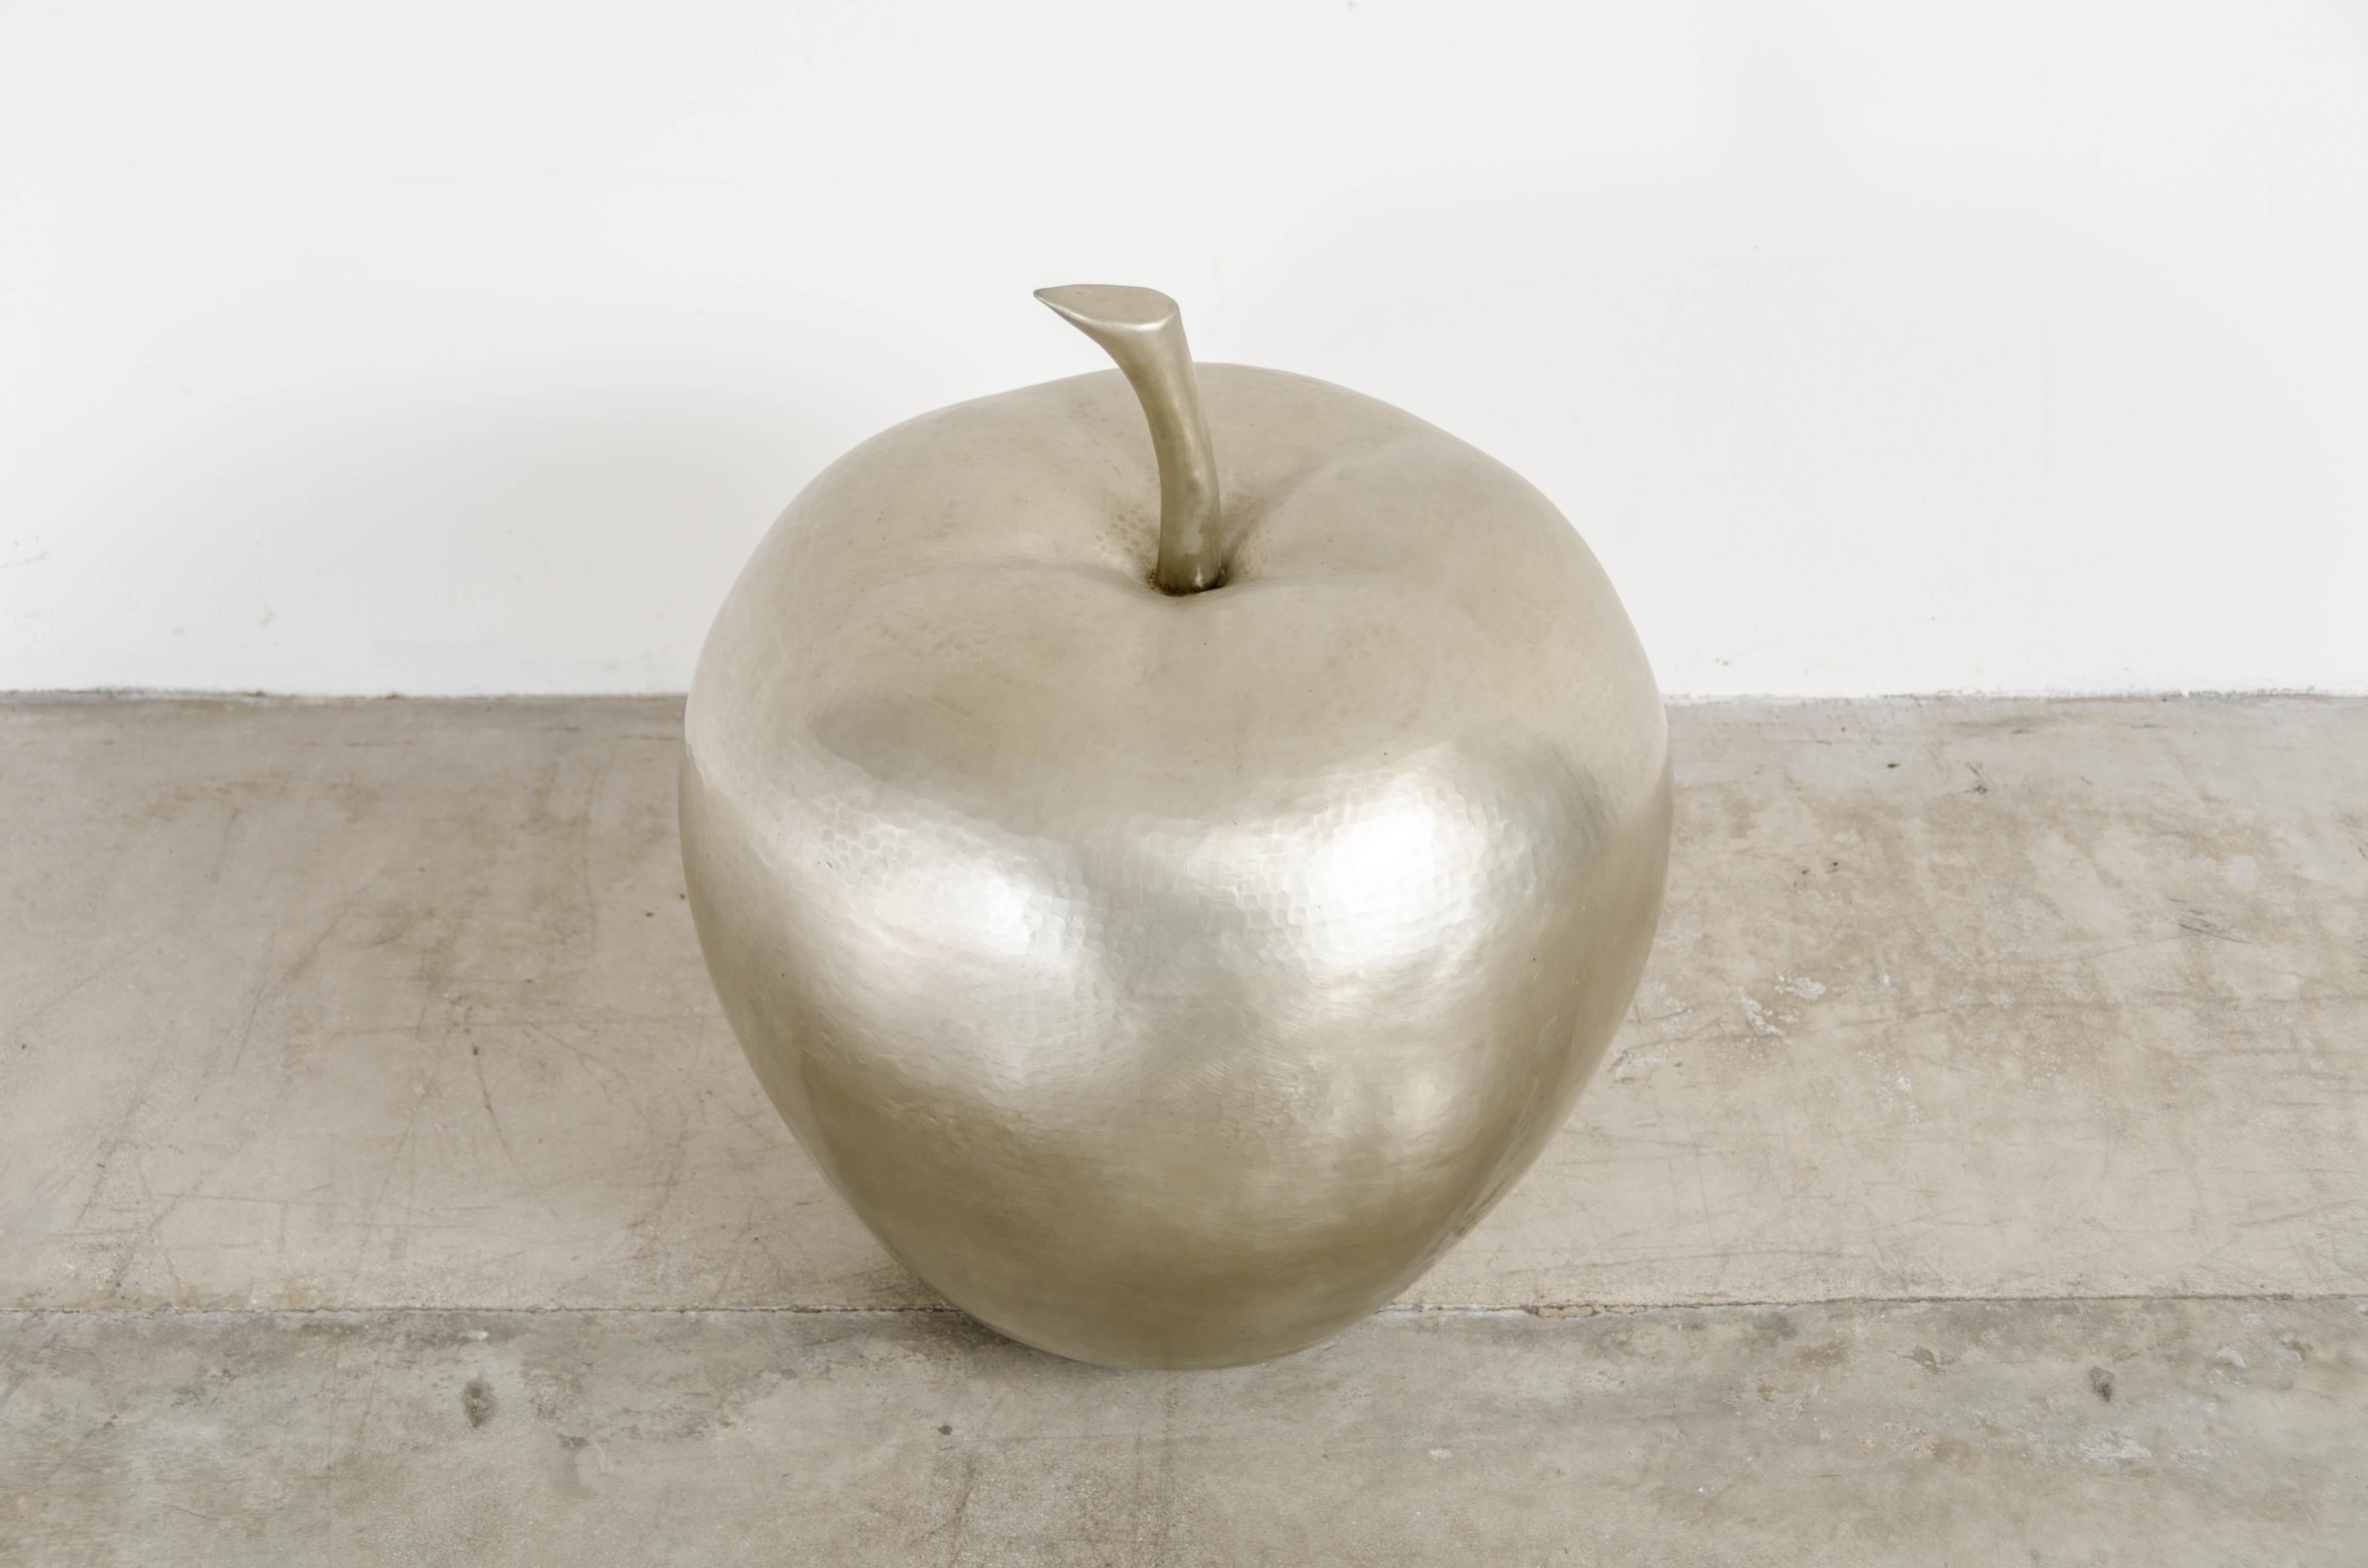 Pomme
blanc bronze
repoussé à la main
Édition limitée
Chaque pièce est fabriquée individuellement et est unique.

La repousse est l'art traditionnel qui consiste à marteler à la main des reliefs décoratifs sur une feuille de métal. La